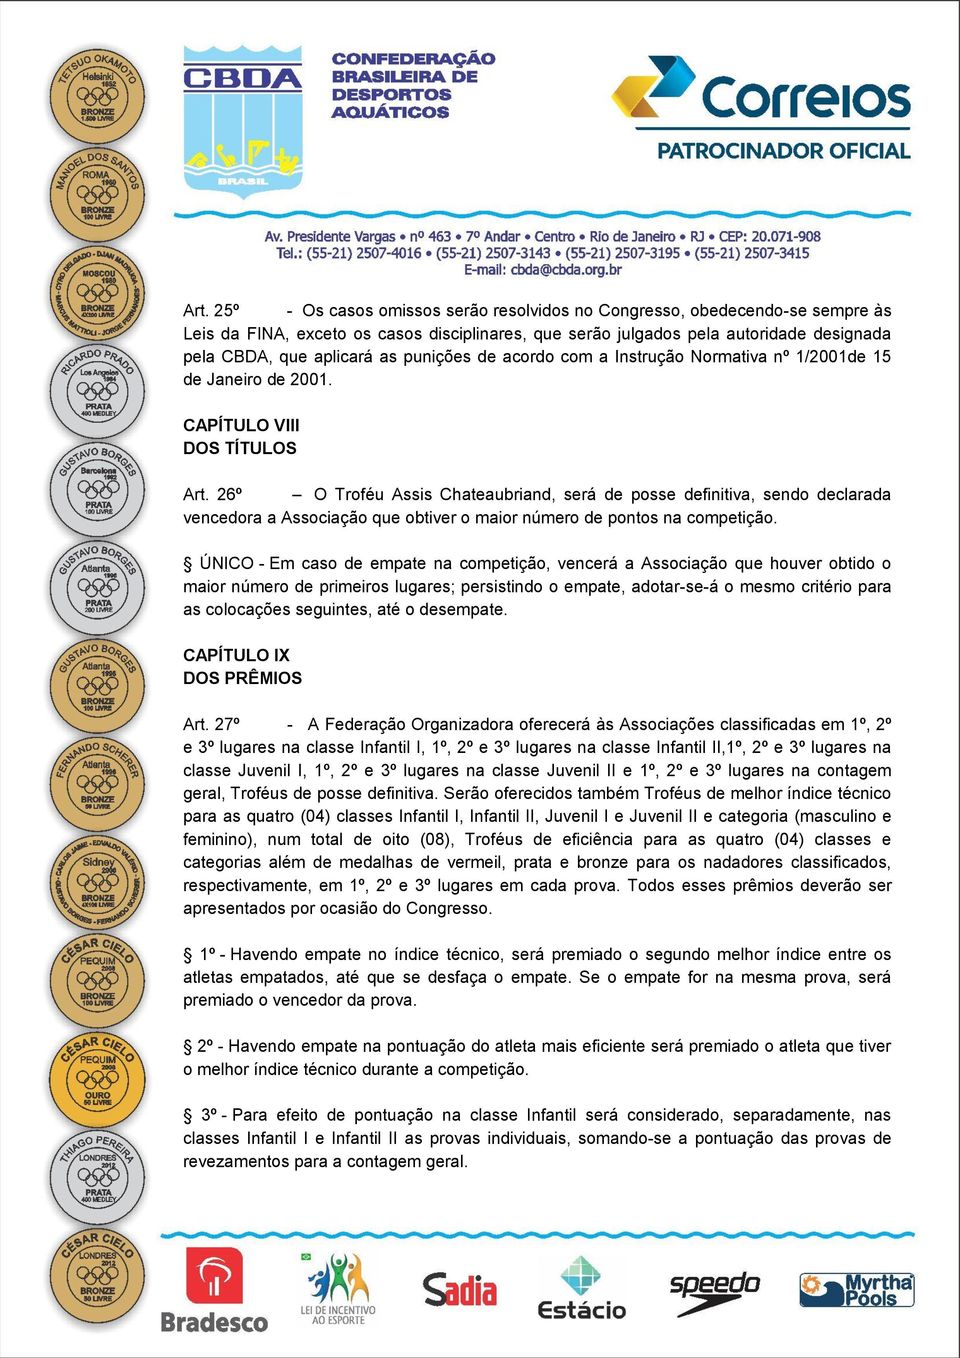 26º O Troféu Assis Chateaubriand, será de posse definitiva, sendo declarada vencedora a Associação que obtiver o maior número de pontos na competição.